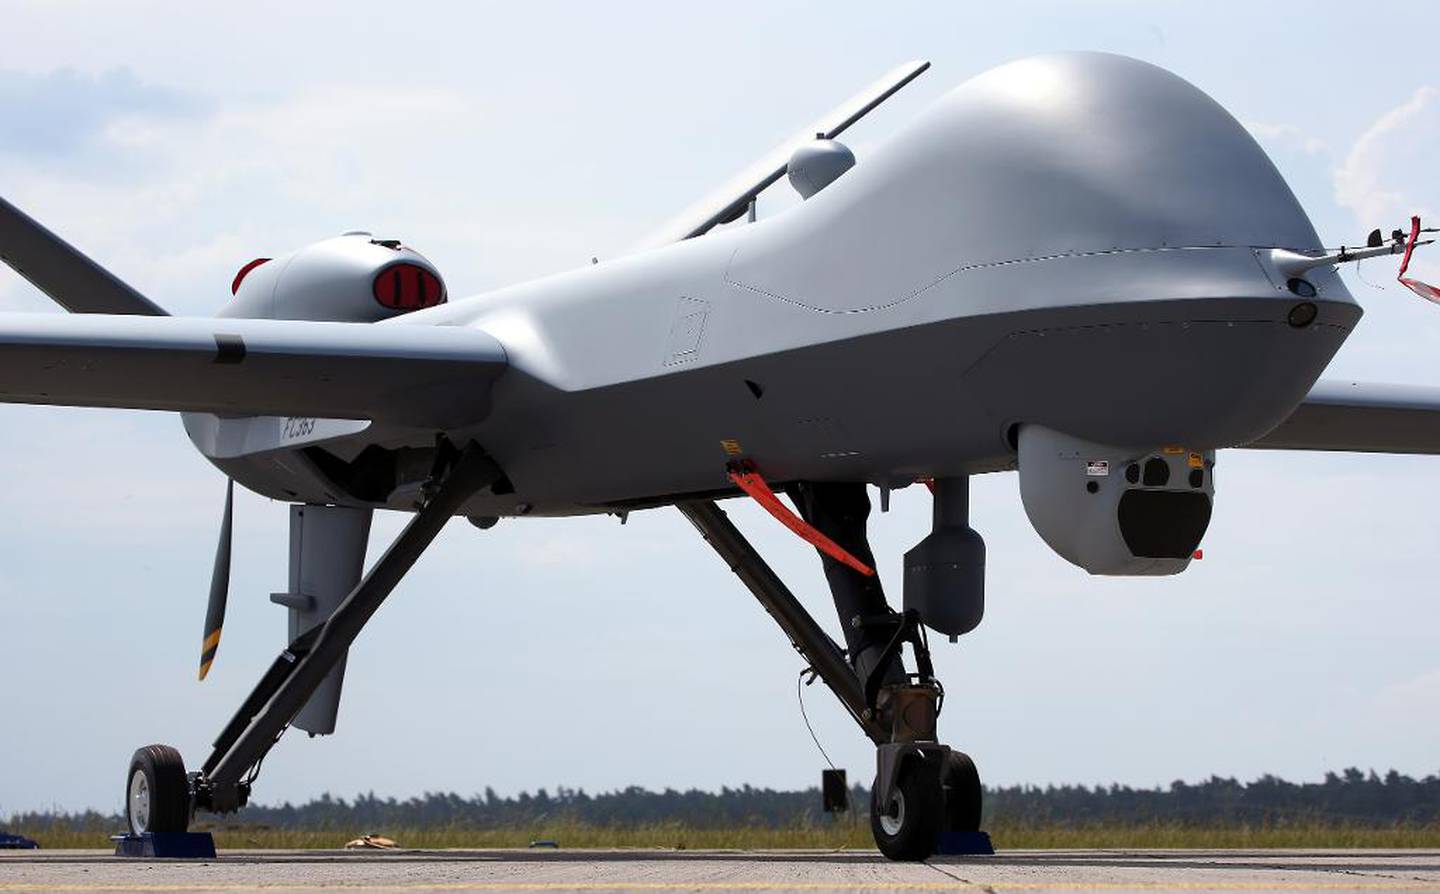 Fjernstyrt: Barack Obama blei dronepresidenten. Han har brukt droner mot terrorleiarar i fleire land.